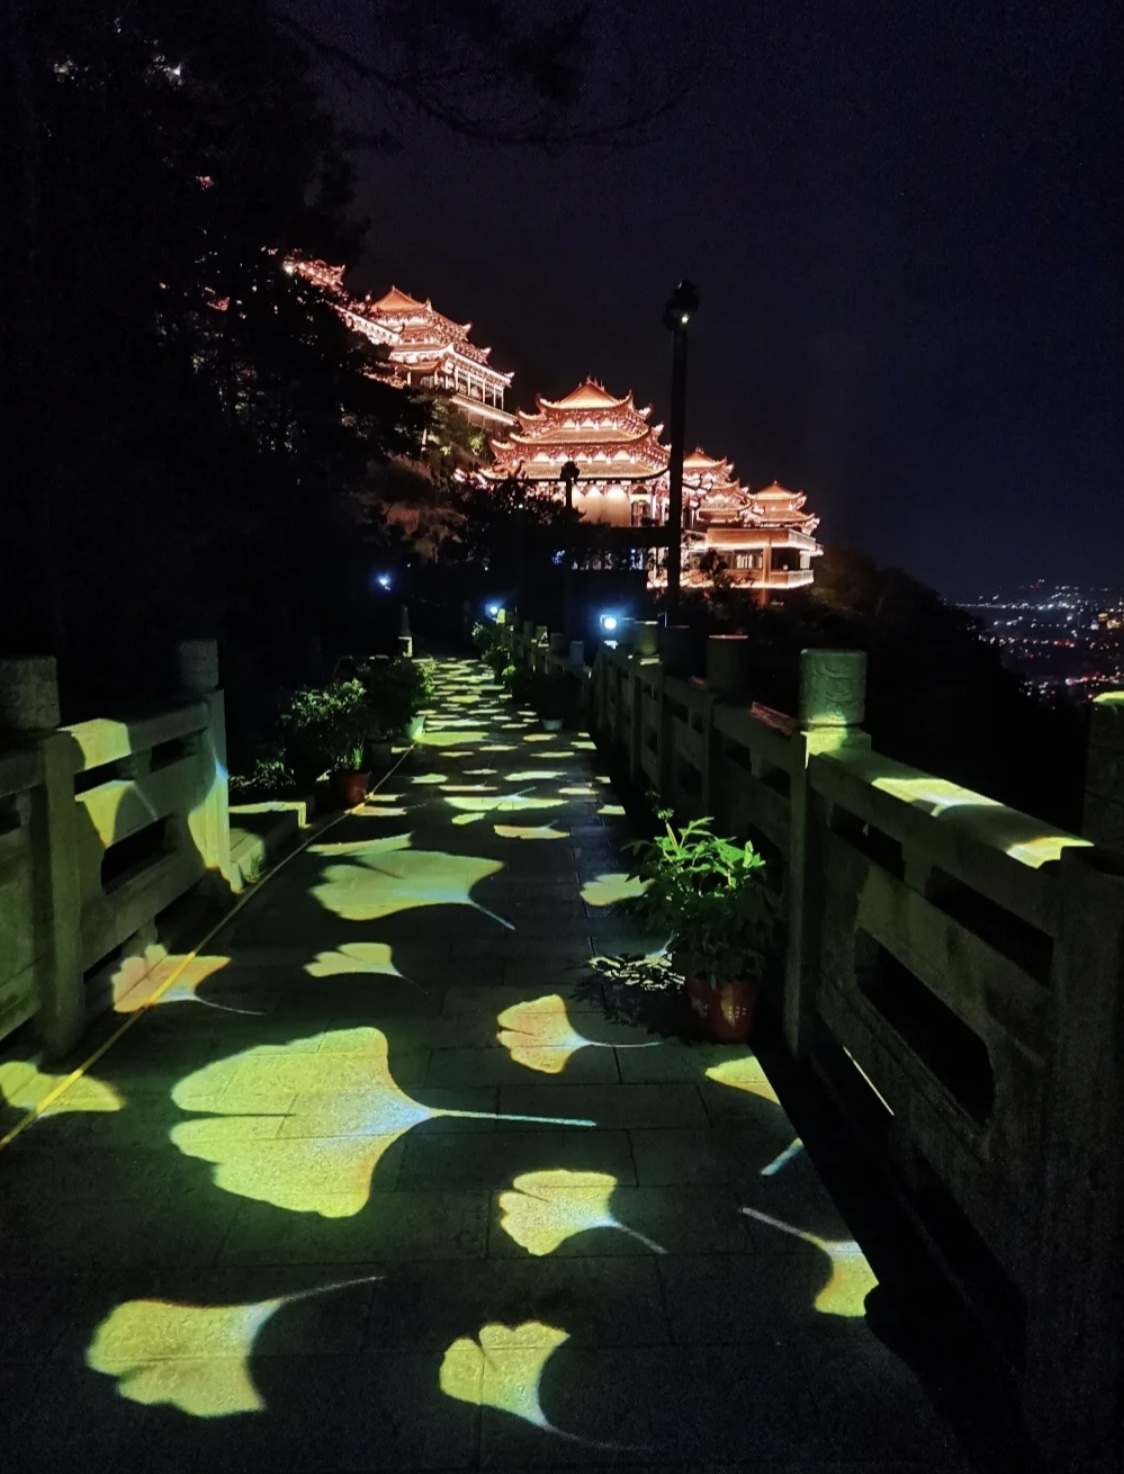 石竹山夜景图片